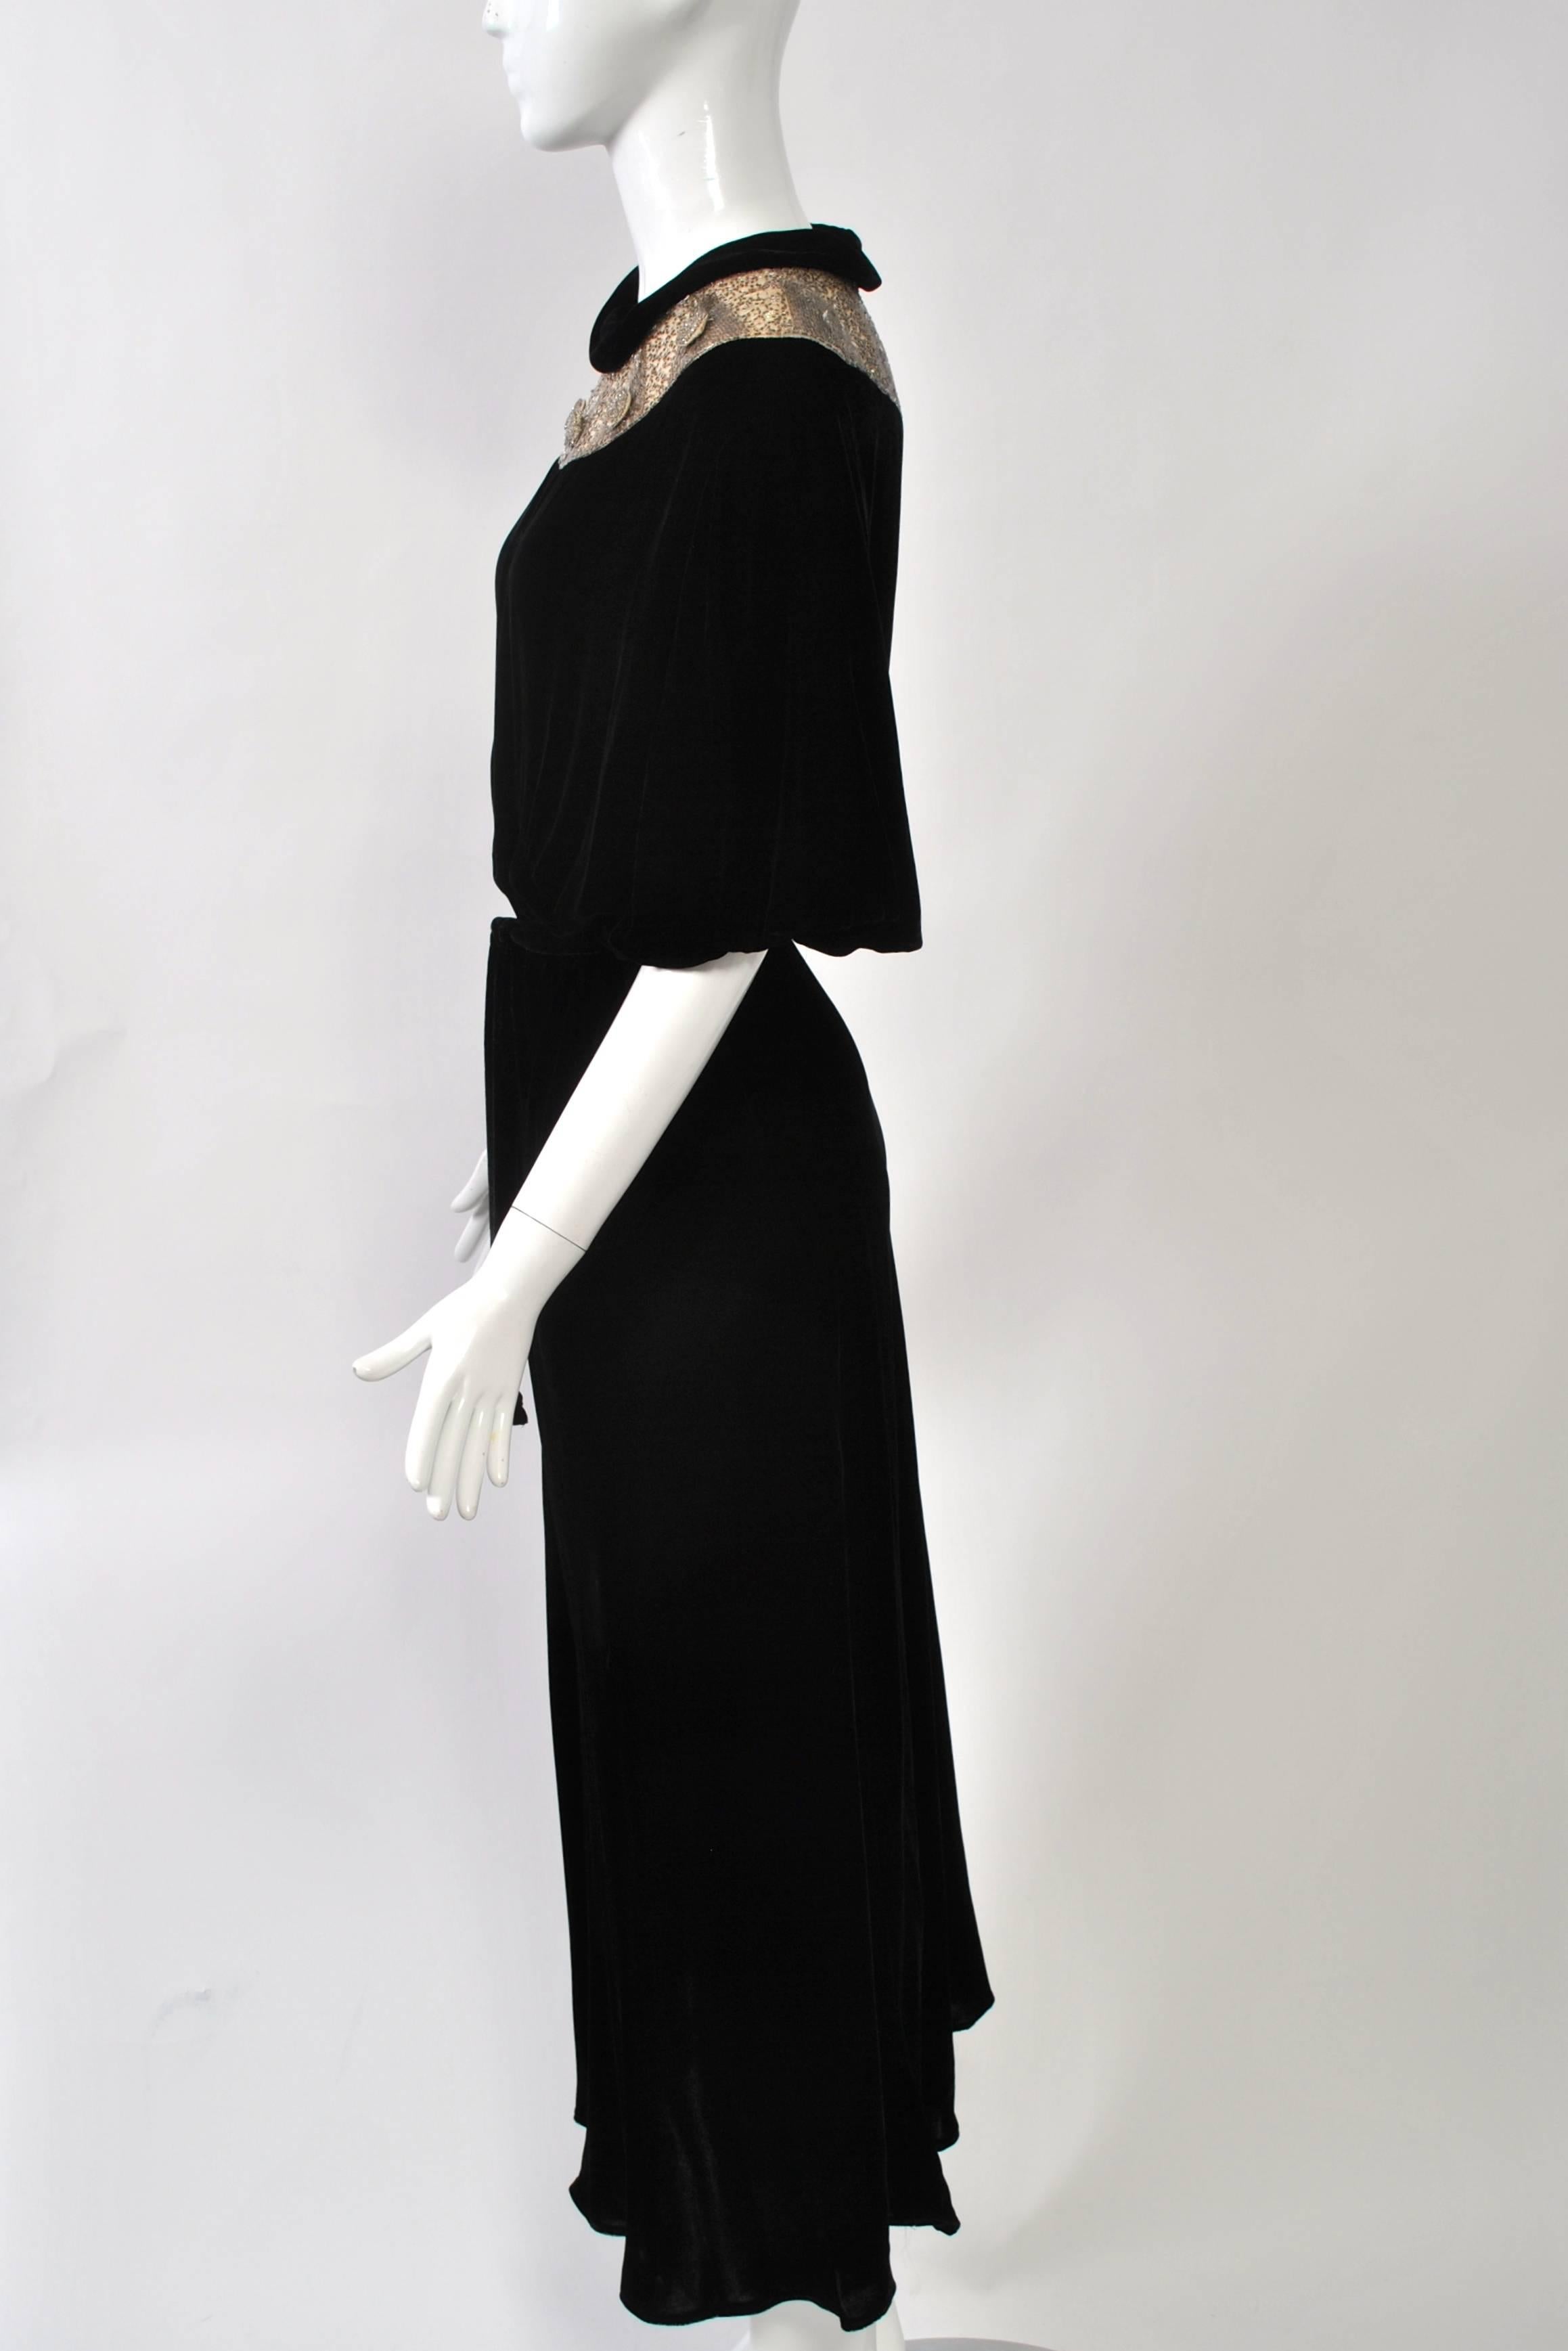 Women's 1930s Black Velvet Gown with Beaded Yoke